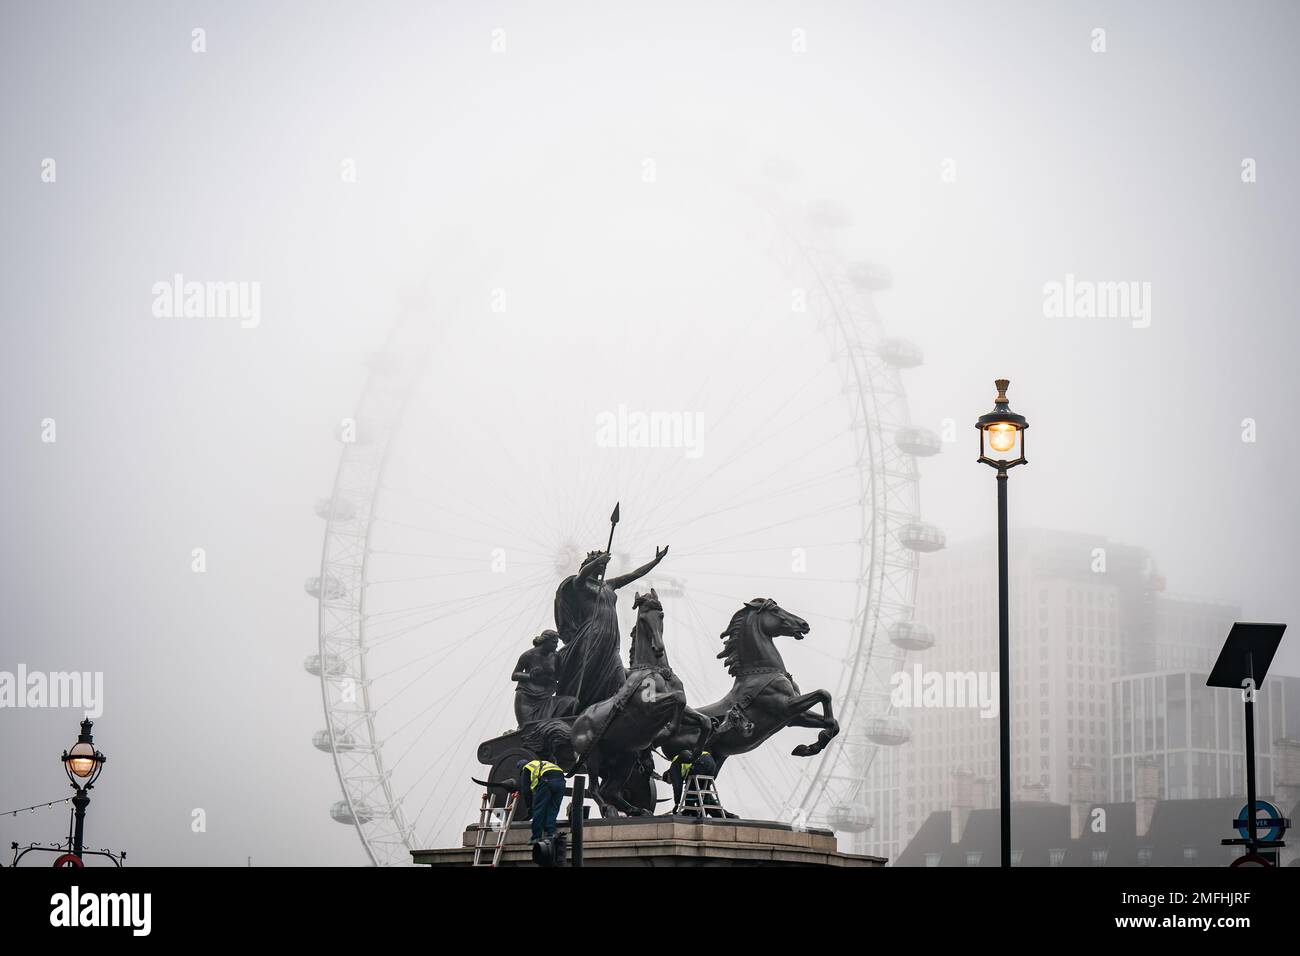 Arbeiter reinigen die Statue des Boudiccan Rebellion am Victoria Embankment, während Nebel das London Eye von lastminute.com am Südufer der Themse in London umgibt. Bilddatum: Mittwoch, 25. Januar 2023. Stockfoto